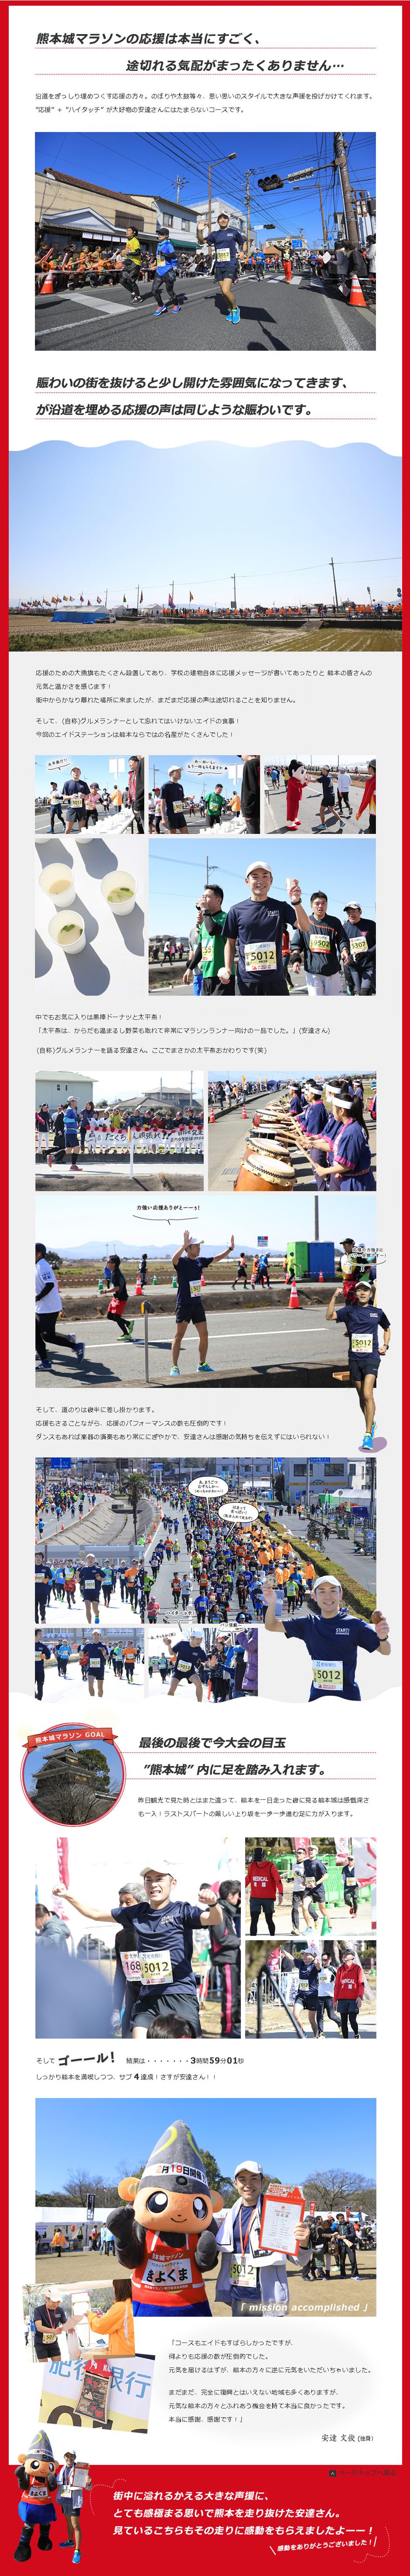  後半編　|　熊本城マラソン2017 取材レポート特別企画　|　フルマラソンさらなる挑戦